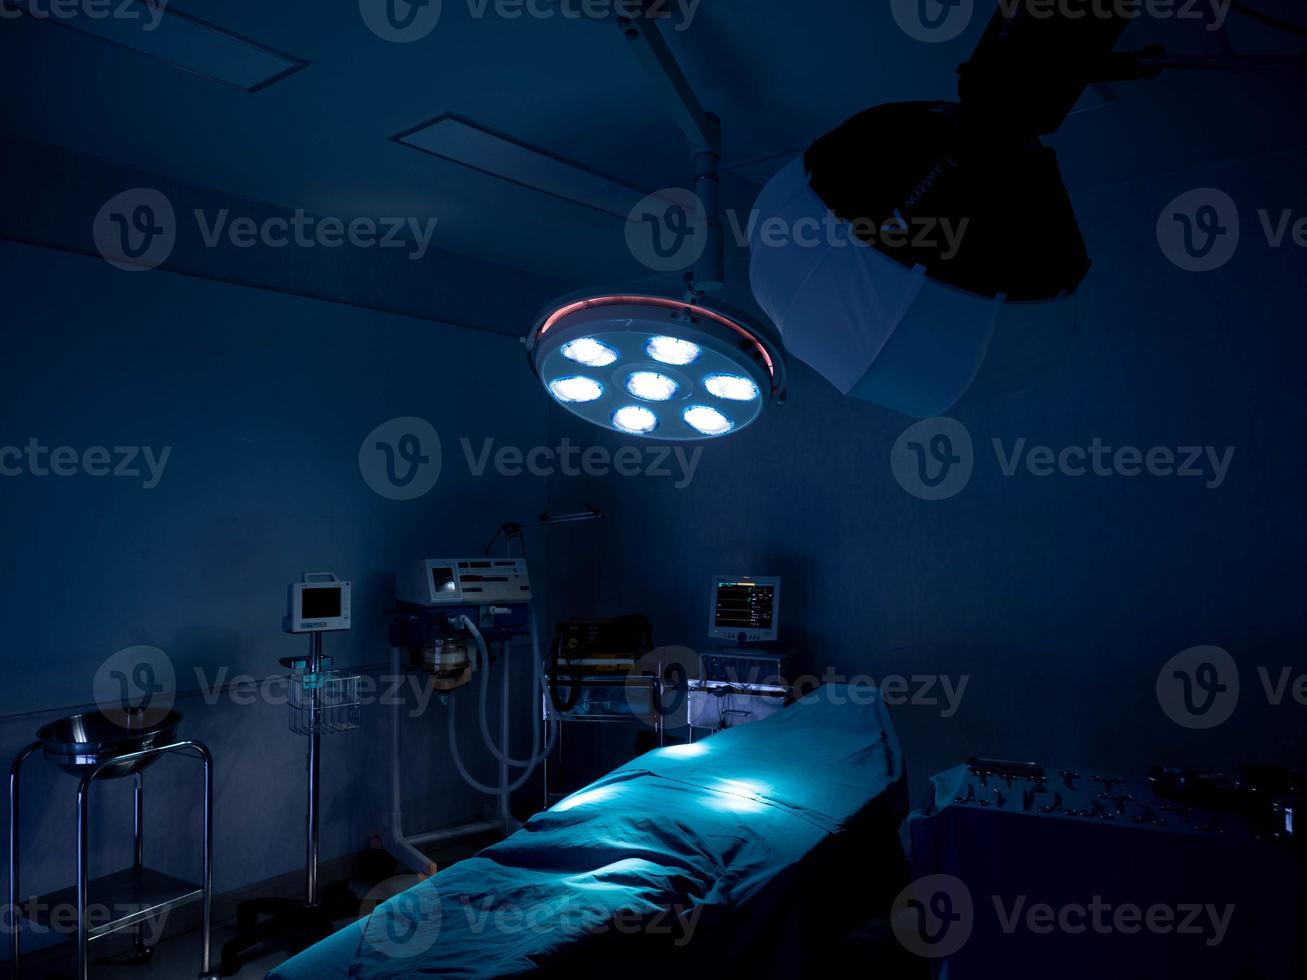 ziekenhuis kliniek laboratorium operatie spoedafdeling kamer patiënt chirurg therapie ongeval onderzoek griep ziekte ziek covid-19 delta ommicron coronavirus ziekte gezondheidszorg behandelingtechnologie foto